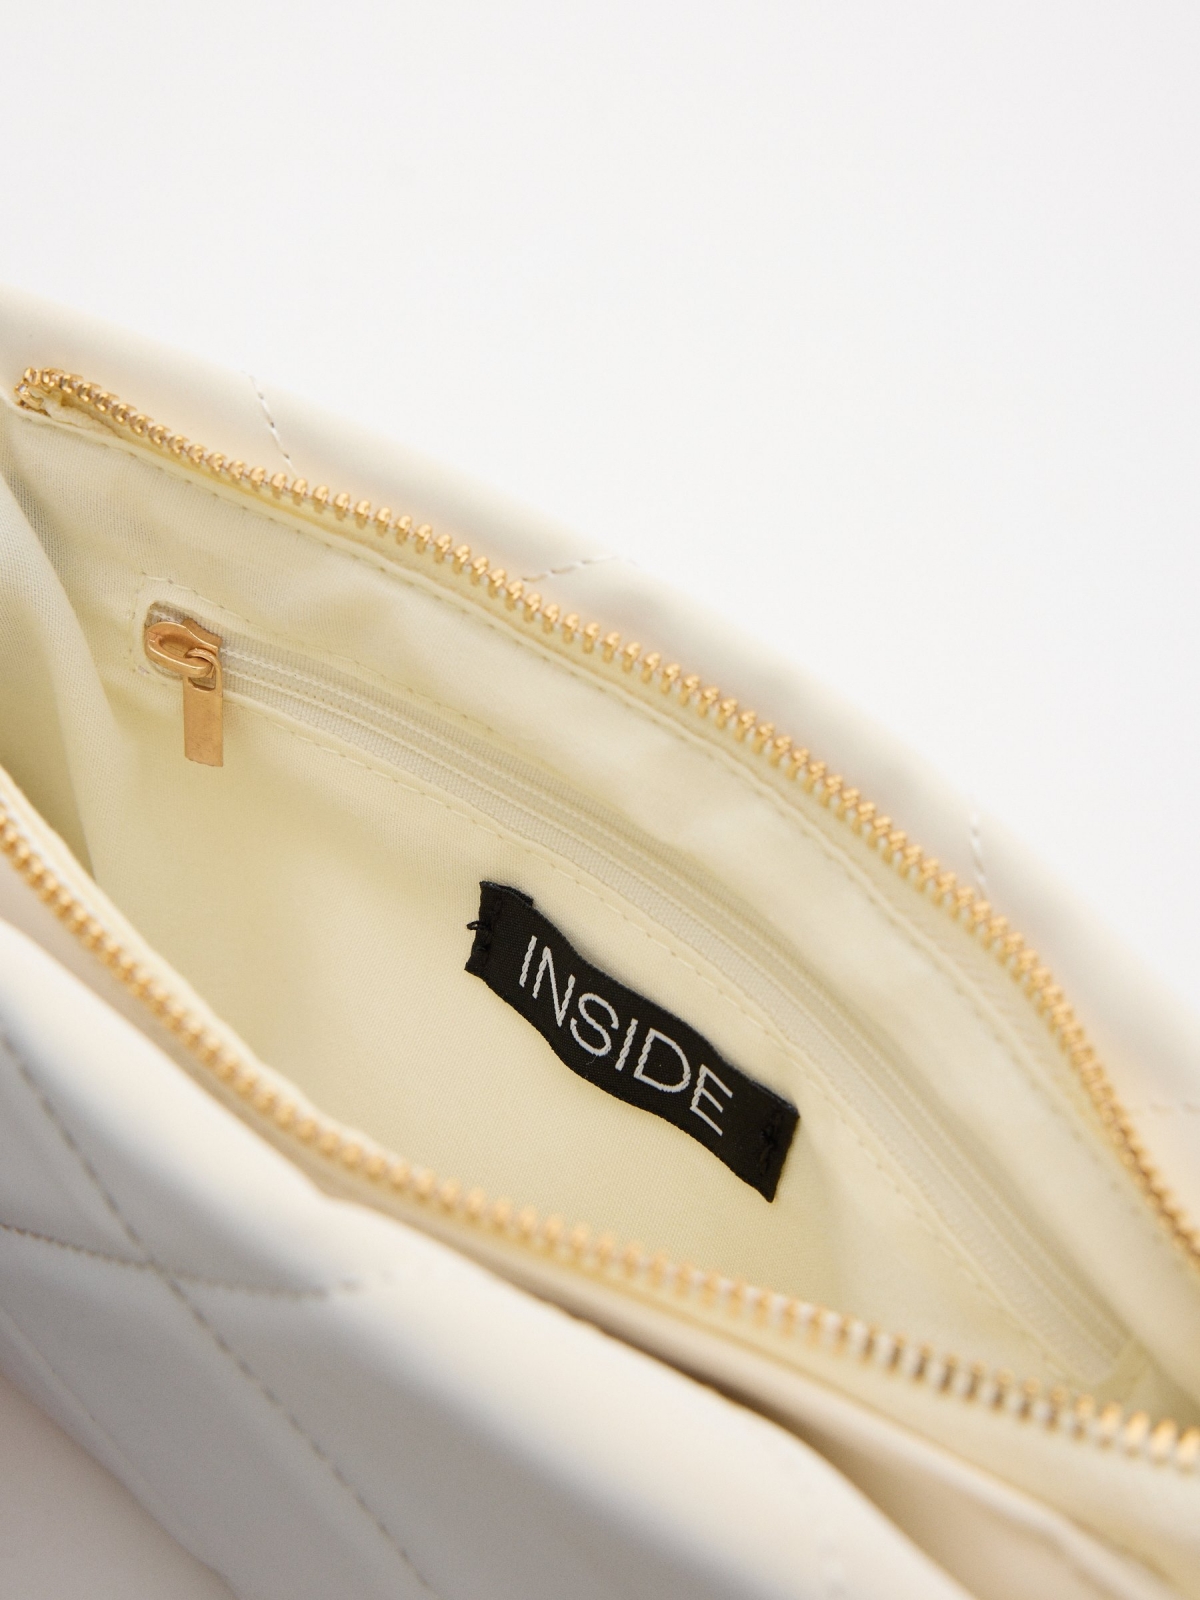 Leatherette shoulder bag ivory detail view